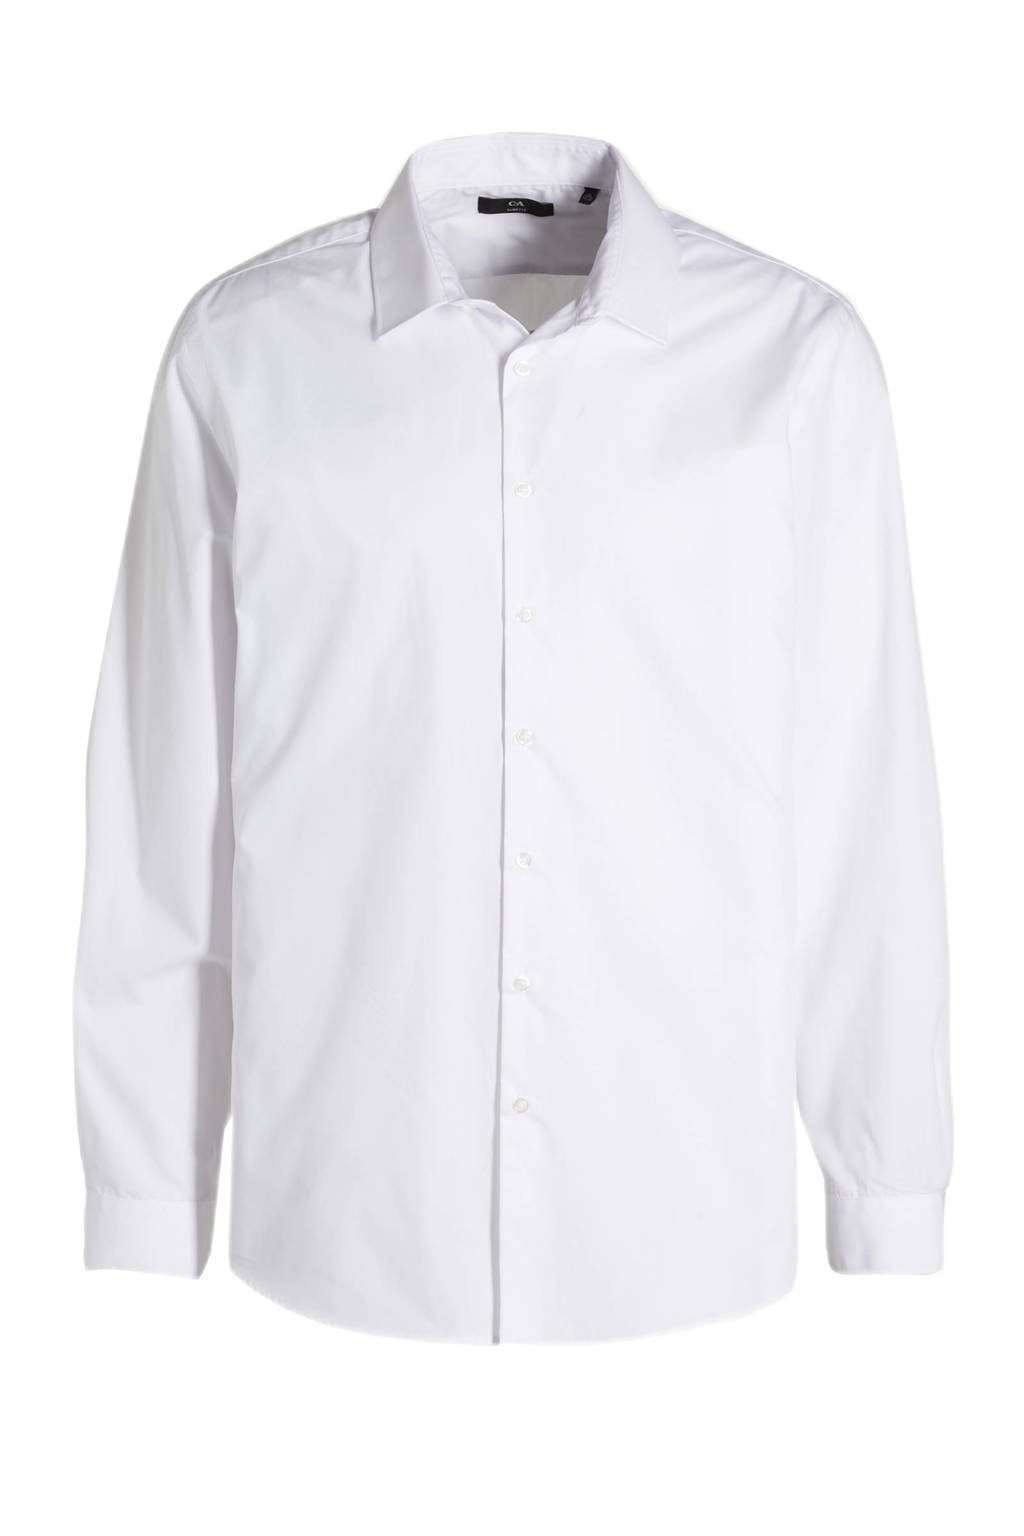 Witte heren C&A regular fit overhemd van katoen met lange mouwen, widespread hals en knoopsluiting